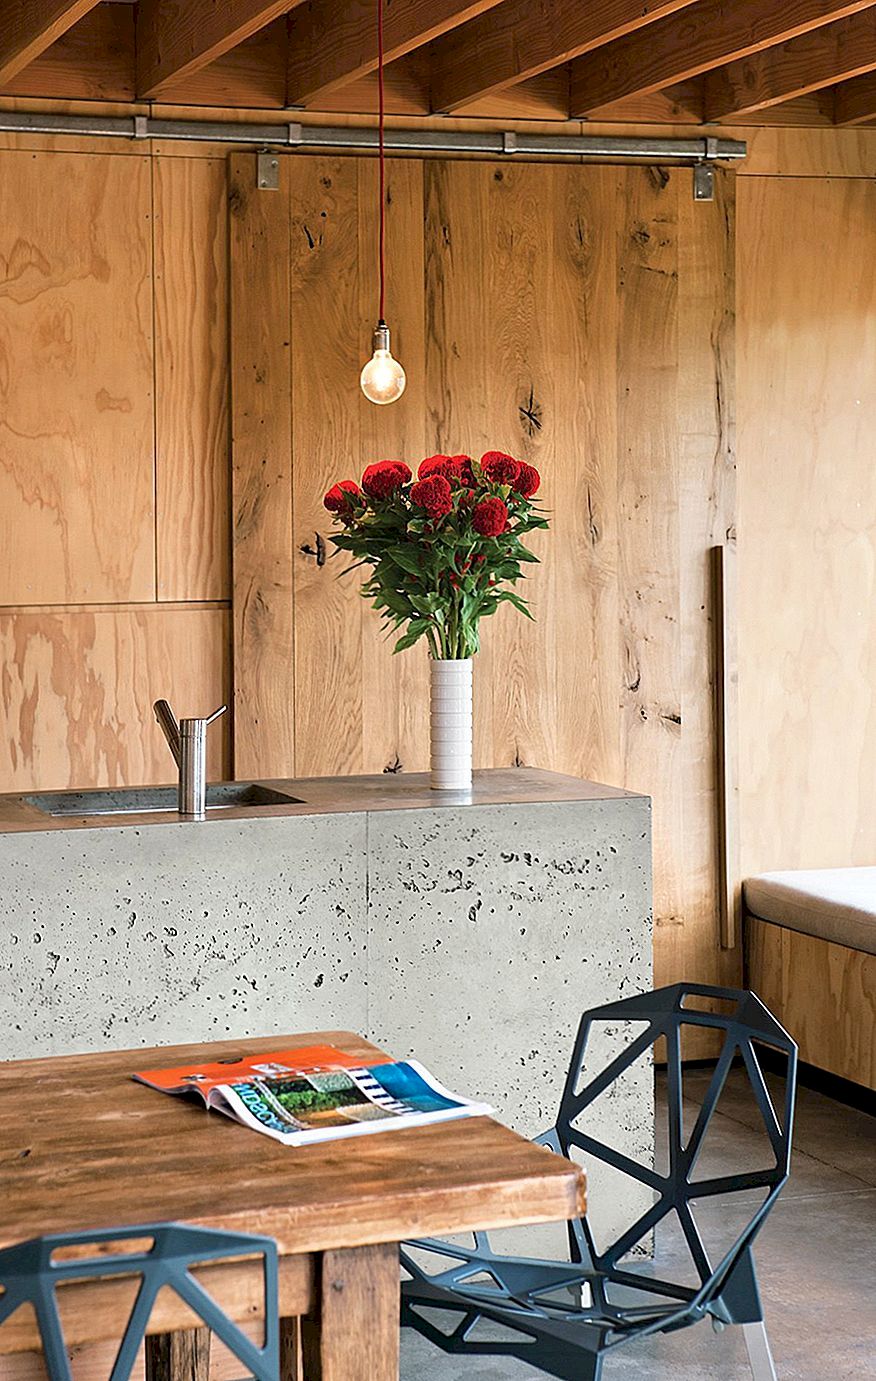 Cementové desky - ohniskové body současného minimalismu